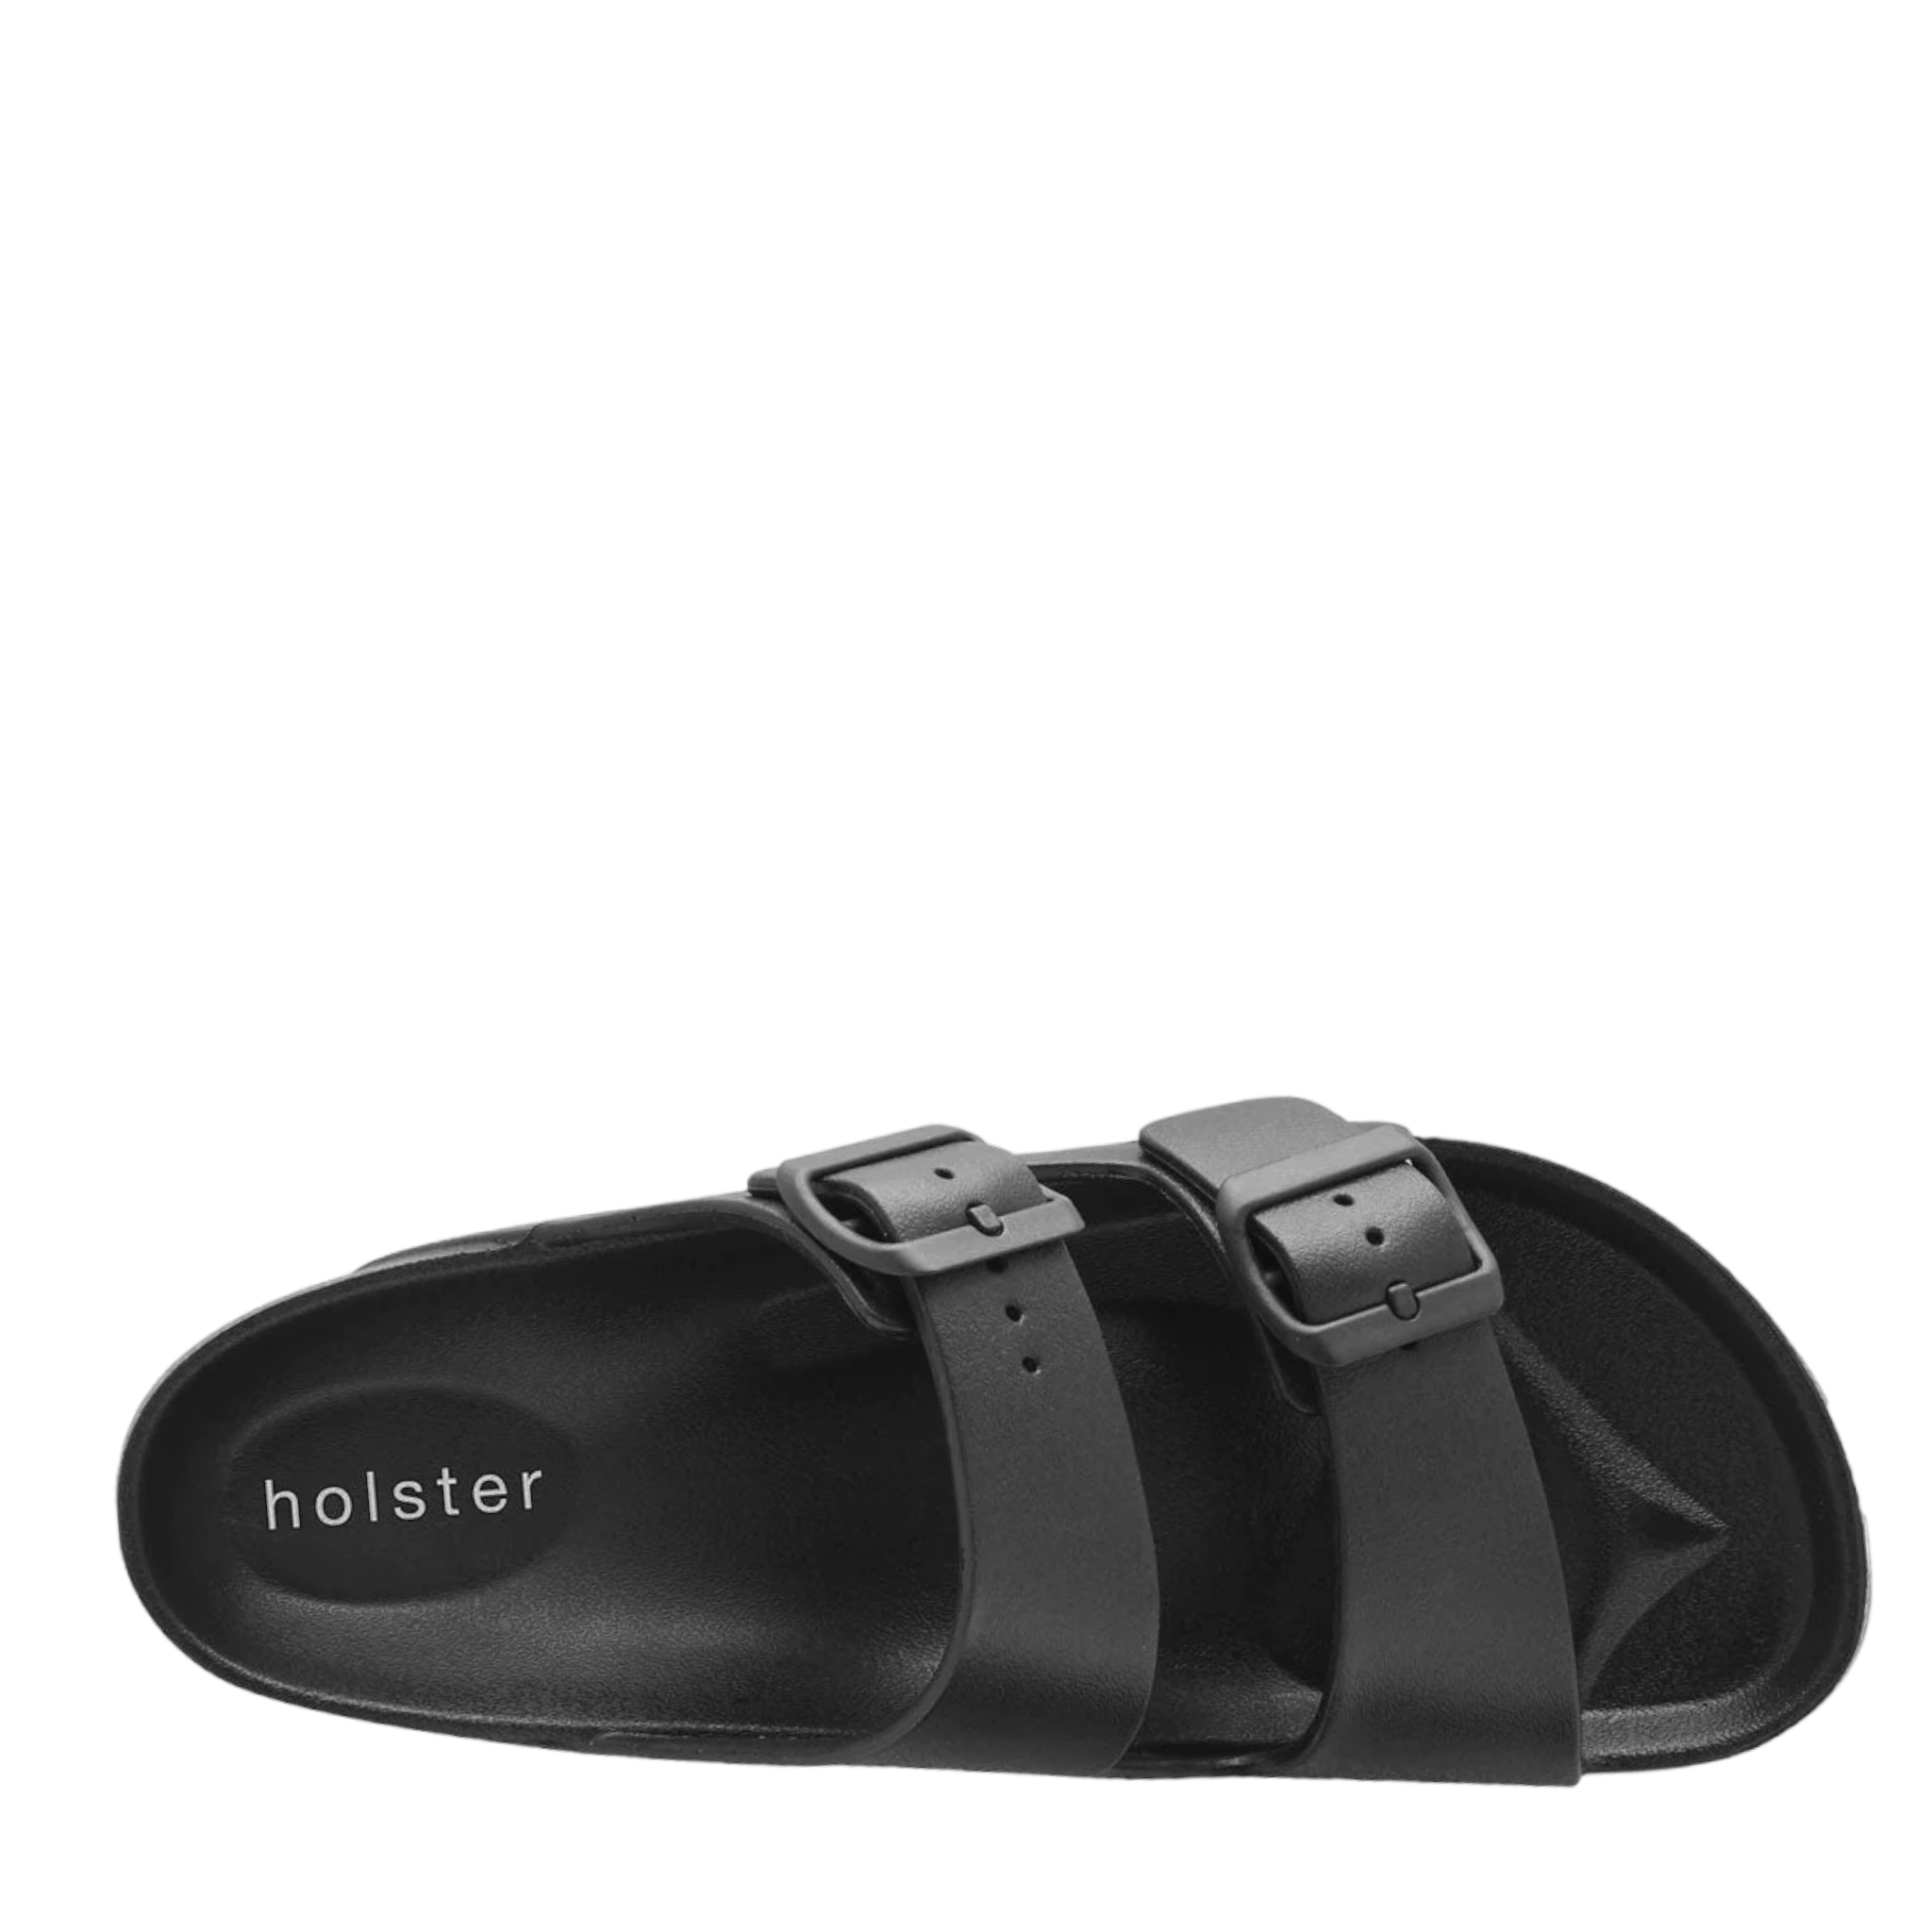 Sundreamer - shoe&me - Holster - Slide - Sandals, Slides/Scuffs, Summer, Vegan, Womens